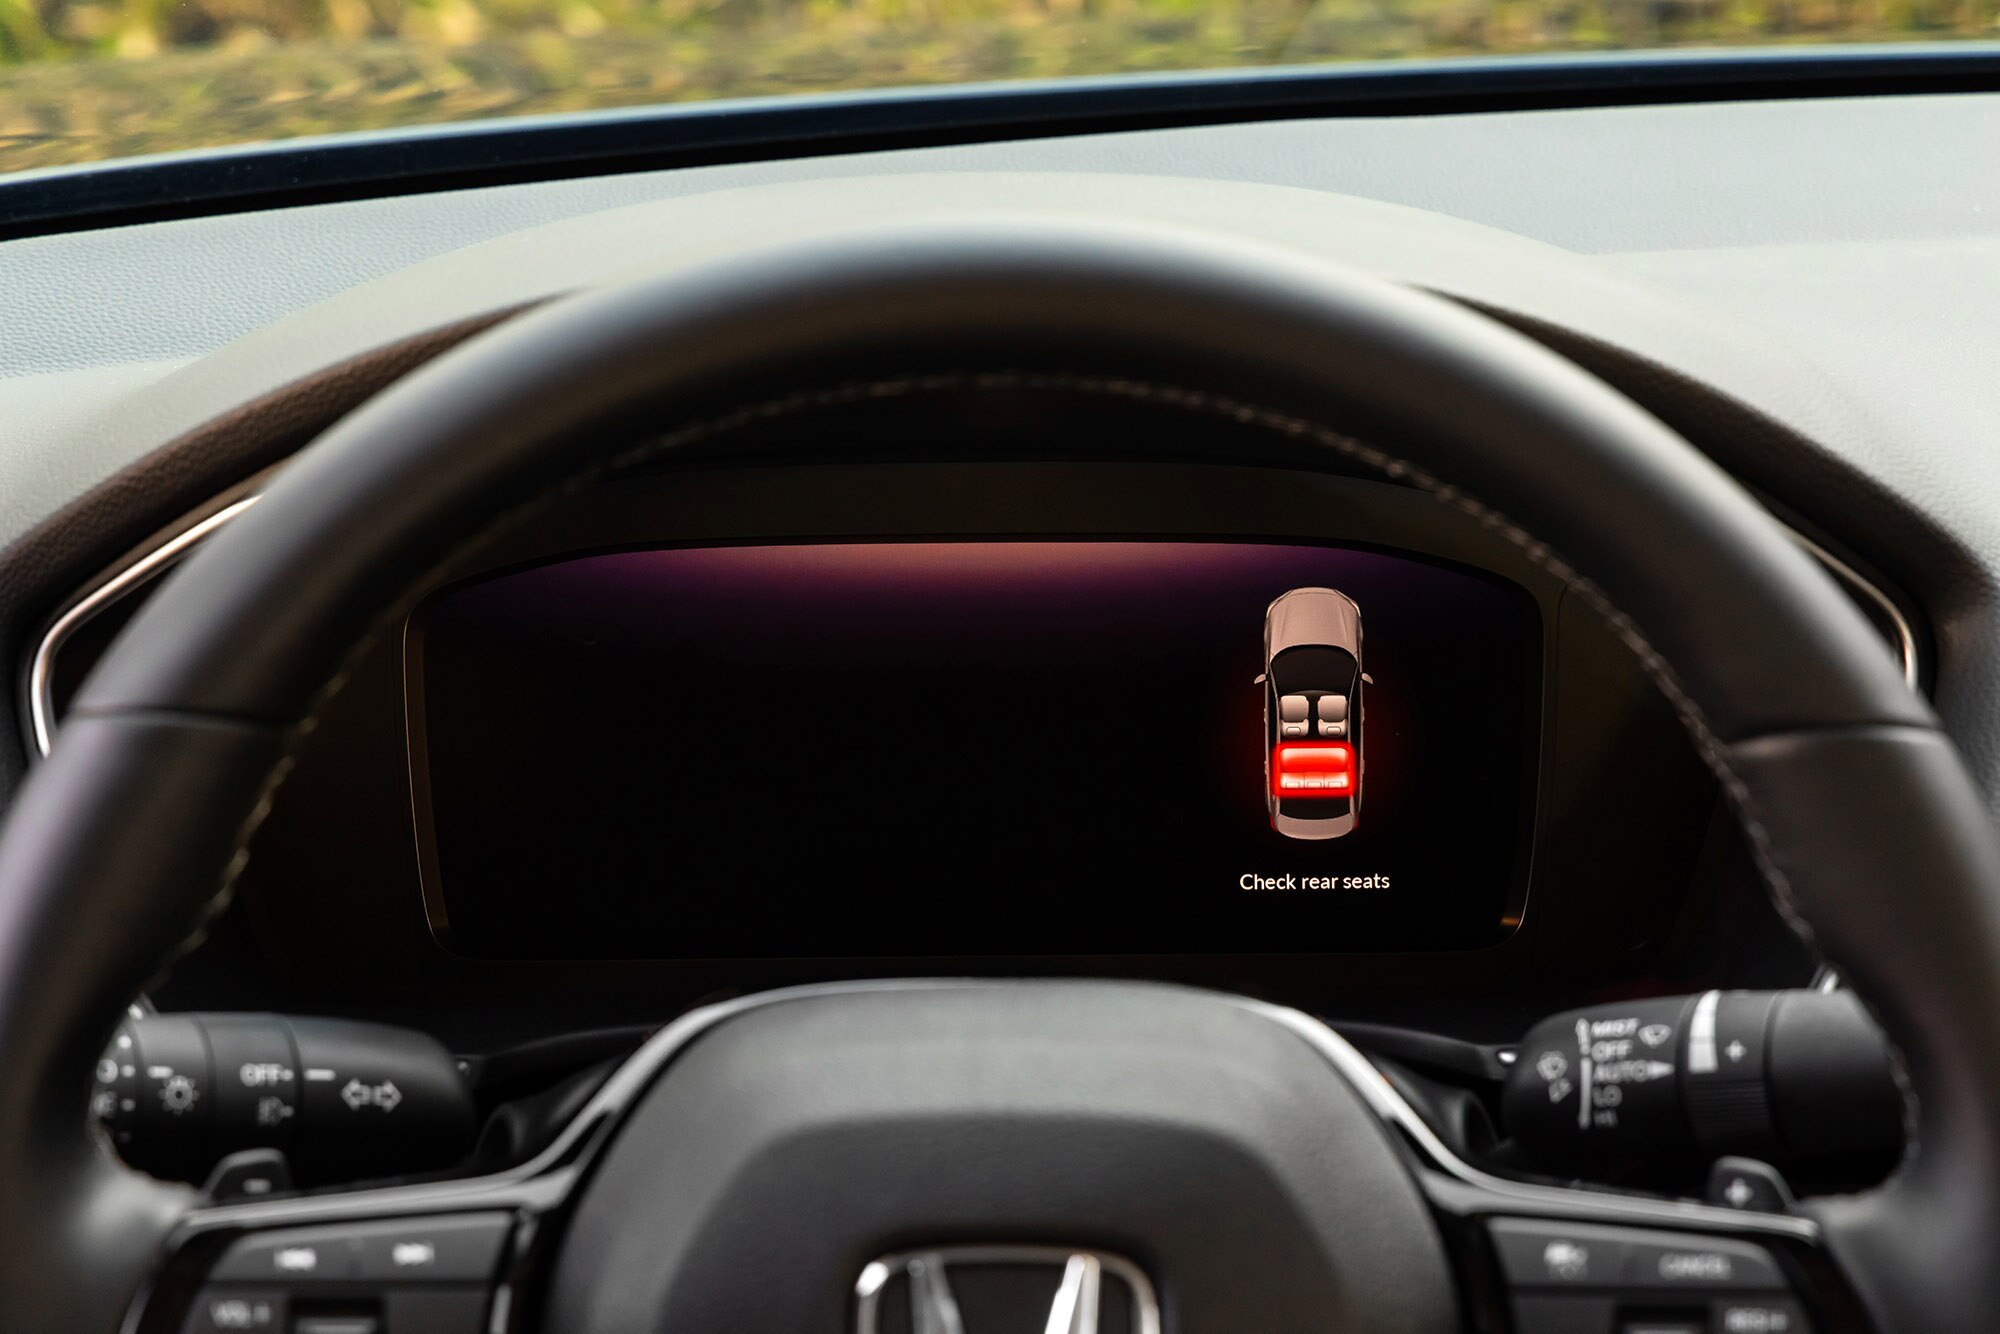 Rear seat reminder digital safety alert on gauge cluster in current-generation Honda Civic